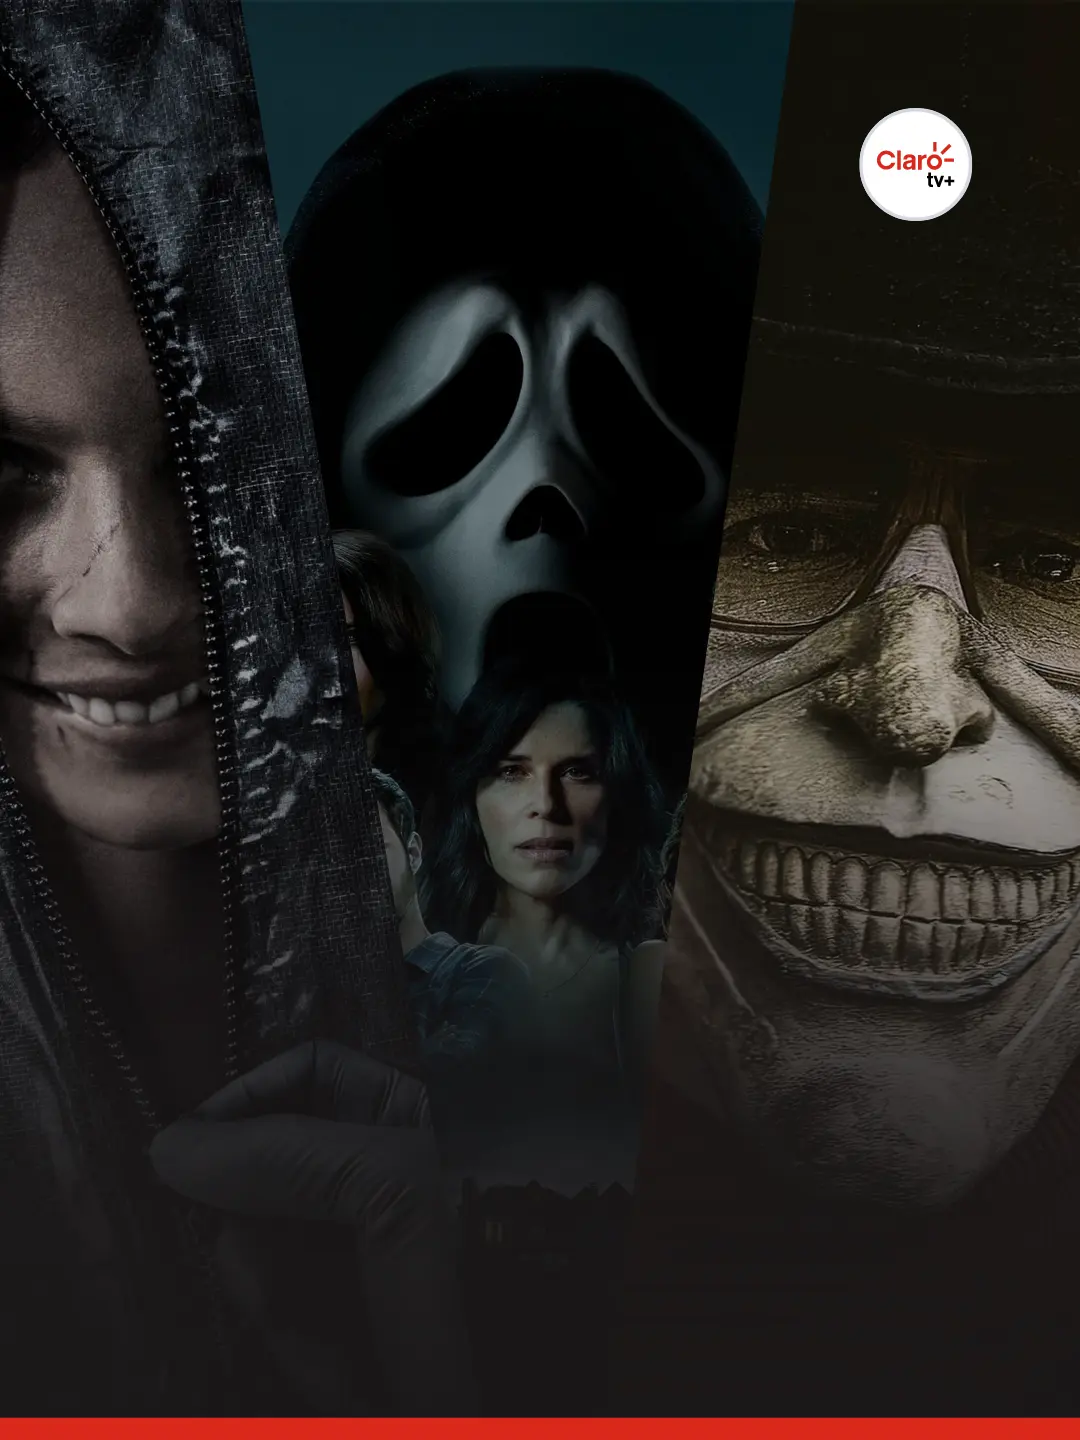 Top 10 Melhores Filmes de Terror Claro tv+